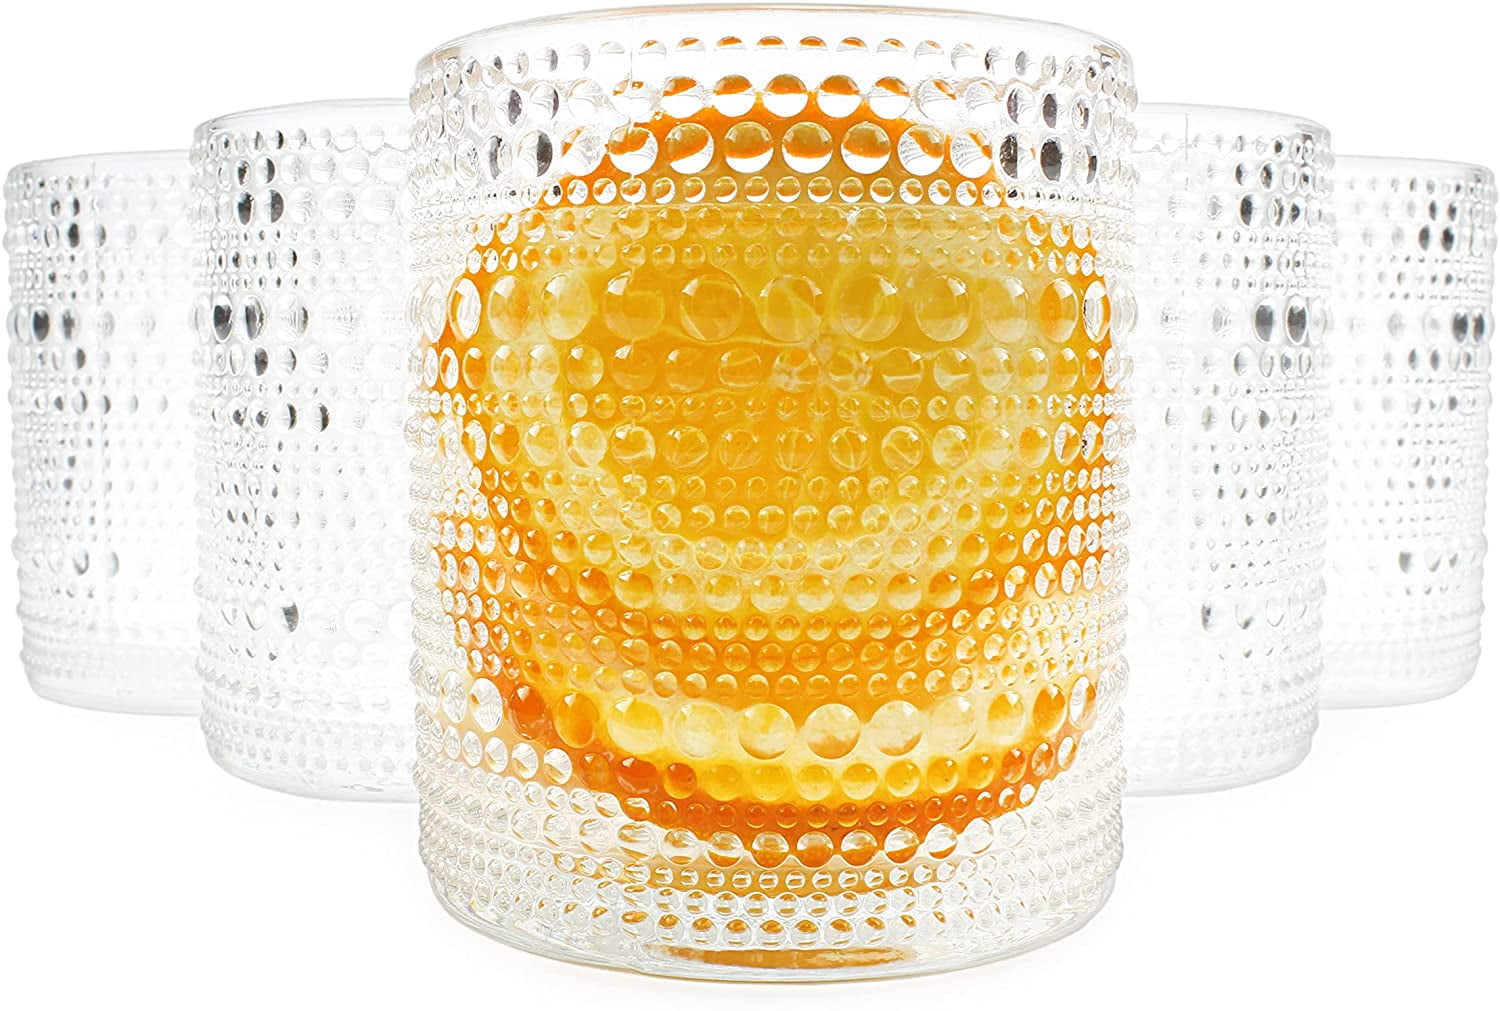 Galssmagic Hobnail Drinking Glasses,12 oz Vintage Glasses Drinking  Glassware,Bubble Glasses Drinking Textured Glass Cups Set of 6